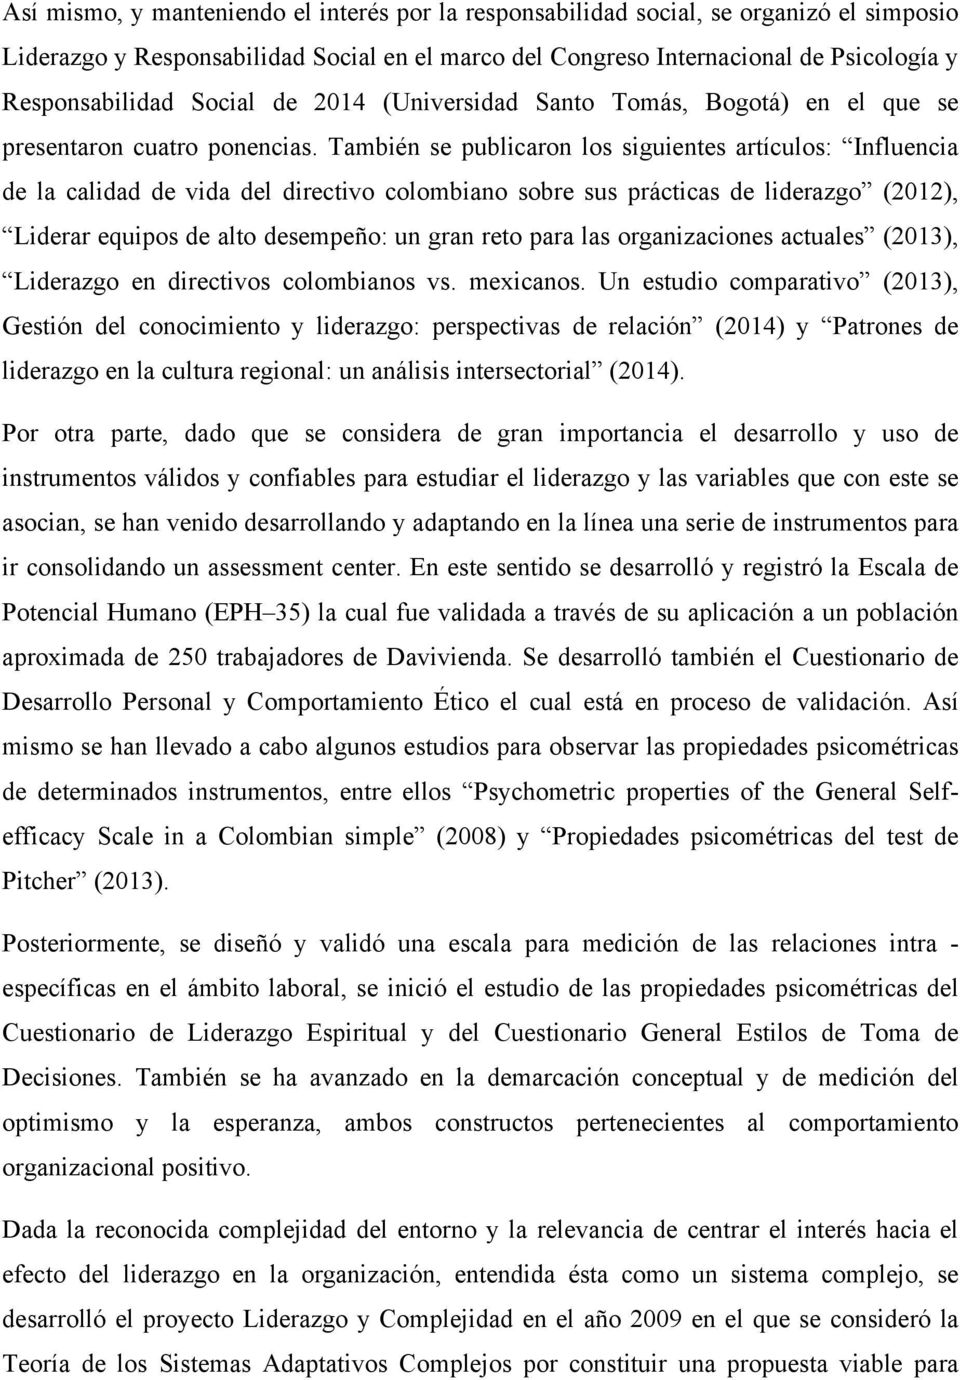 También se publicaron los siguientes artículos: Influencia de la calidad de vida del directivo colombiano sobre sus prácticas de liderazgo (2012), Liderar equipos de alto desempeño: un gran reto para